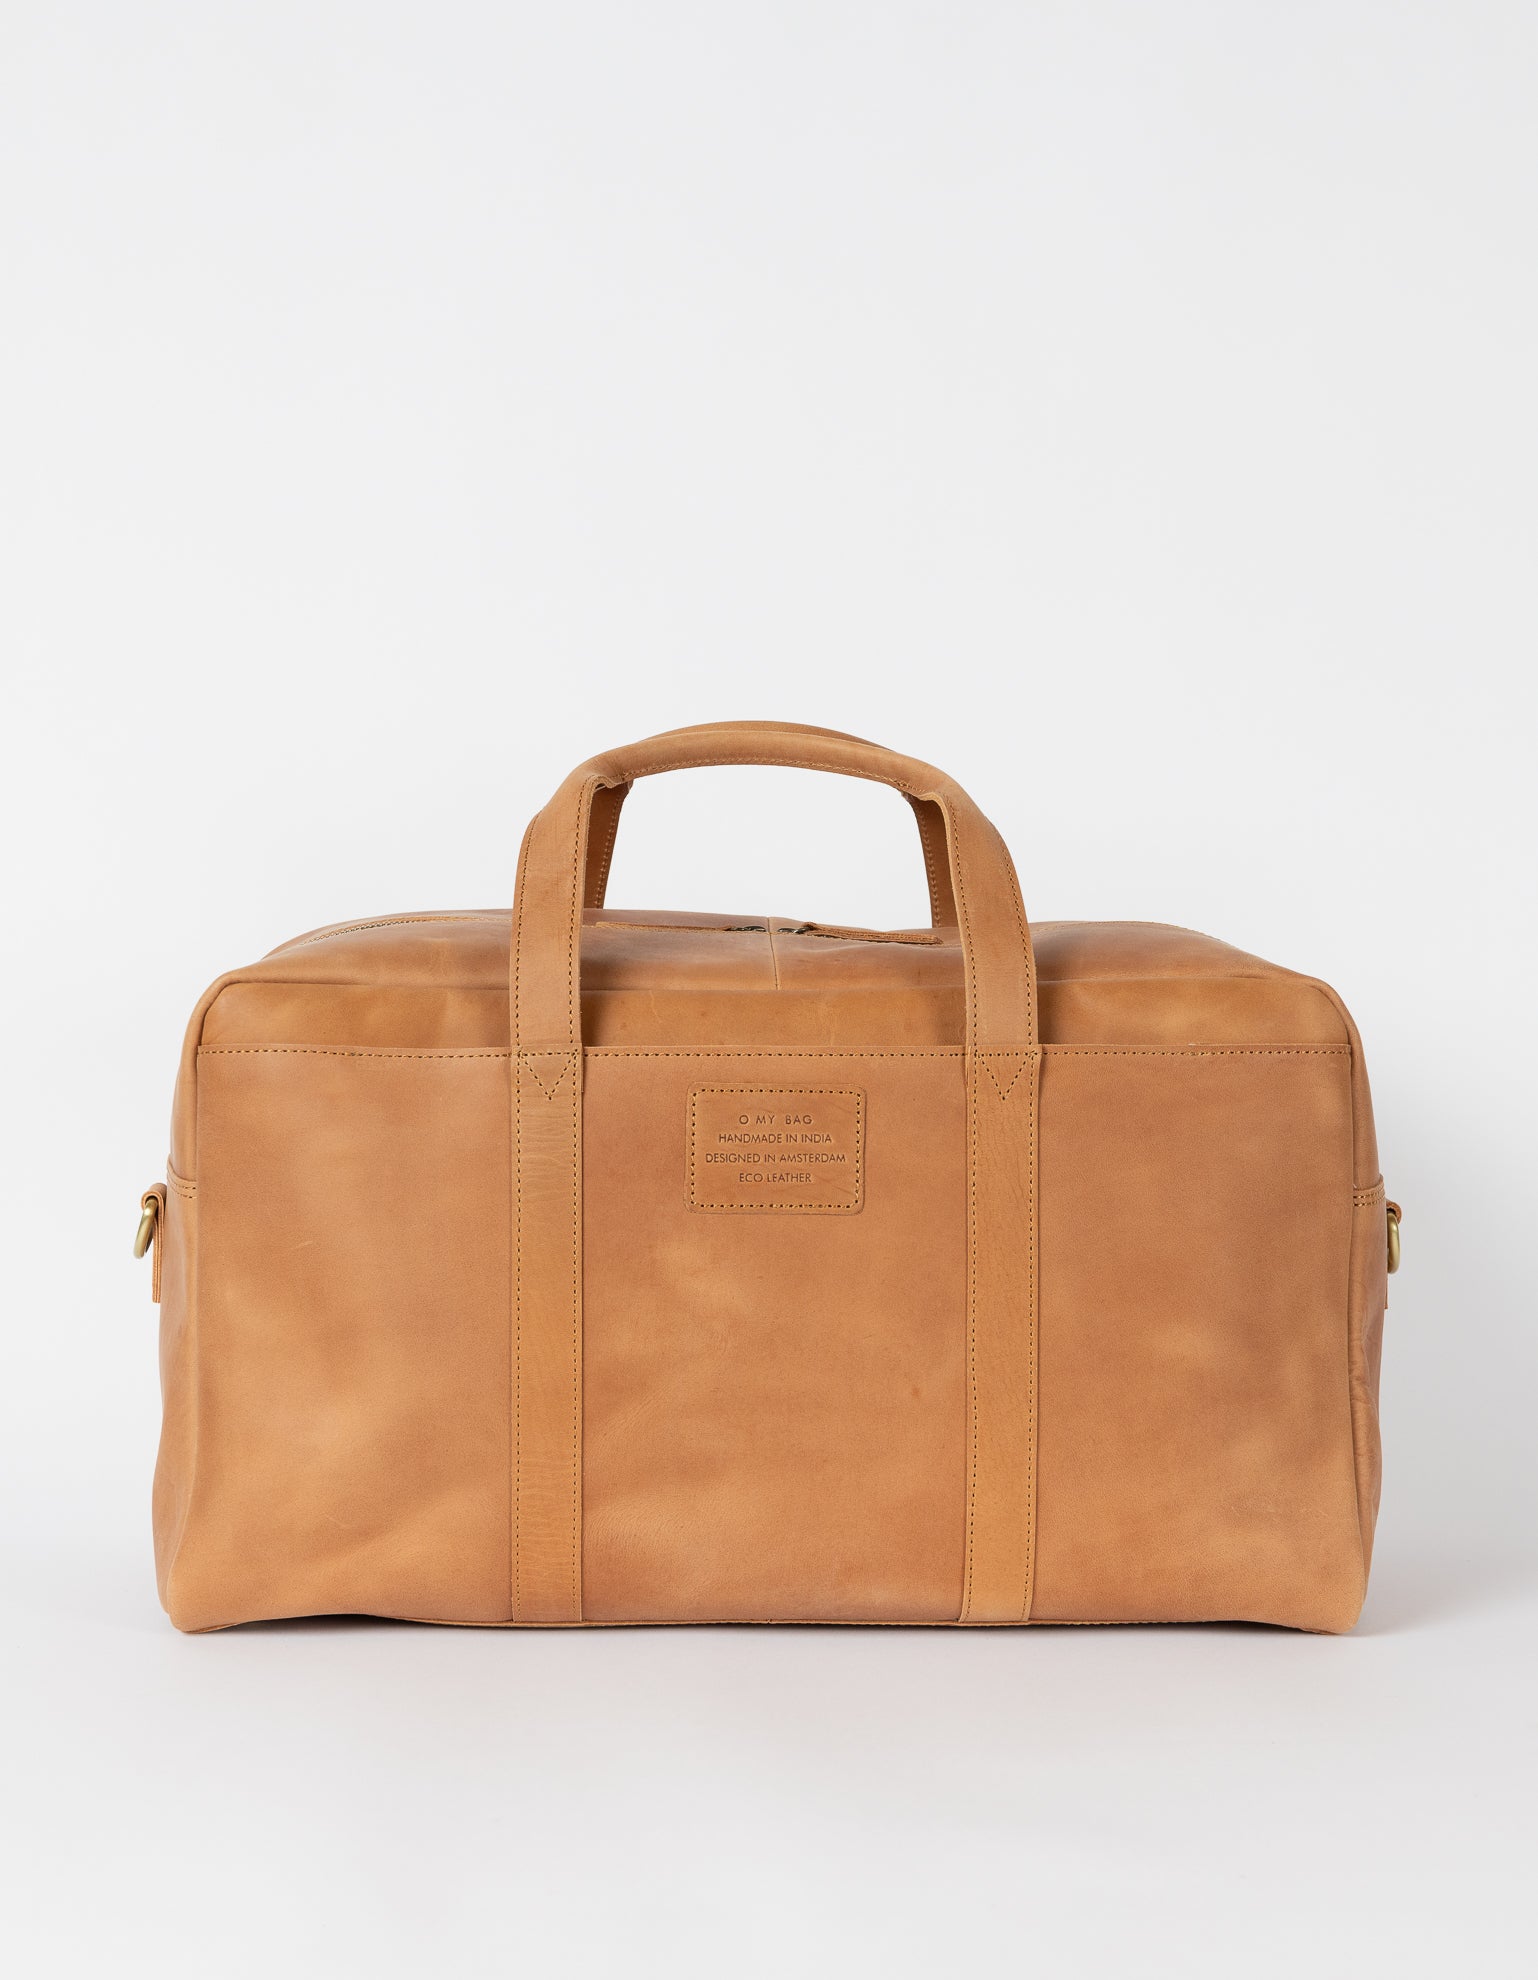 Otis Weekender Camel Hunter Leather. Large travel bag for men. Front product image.